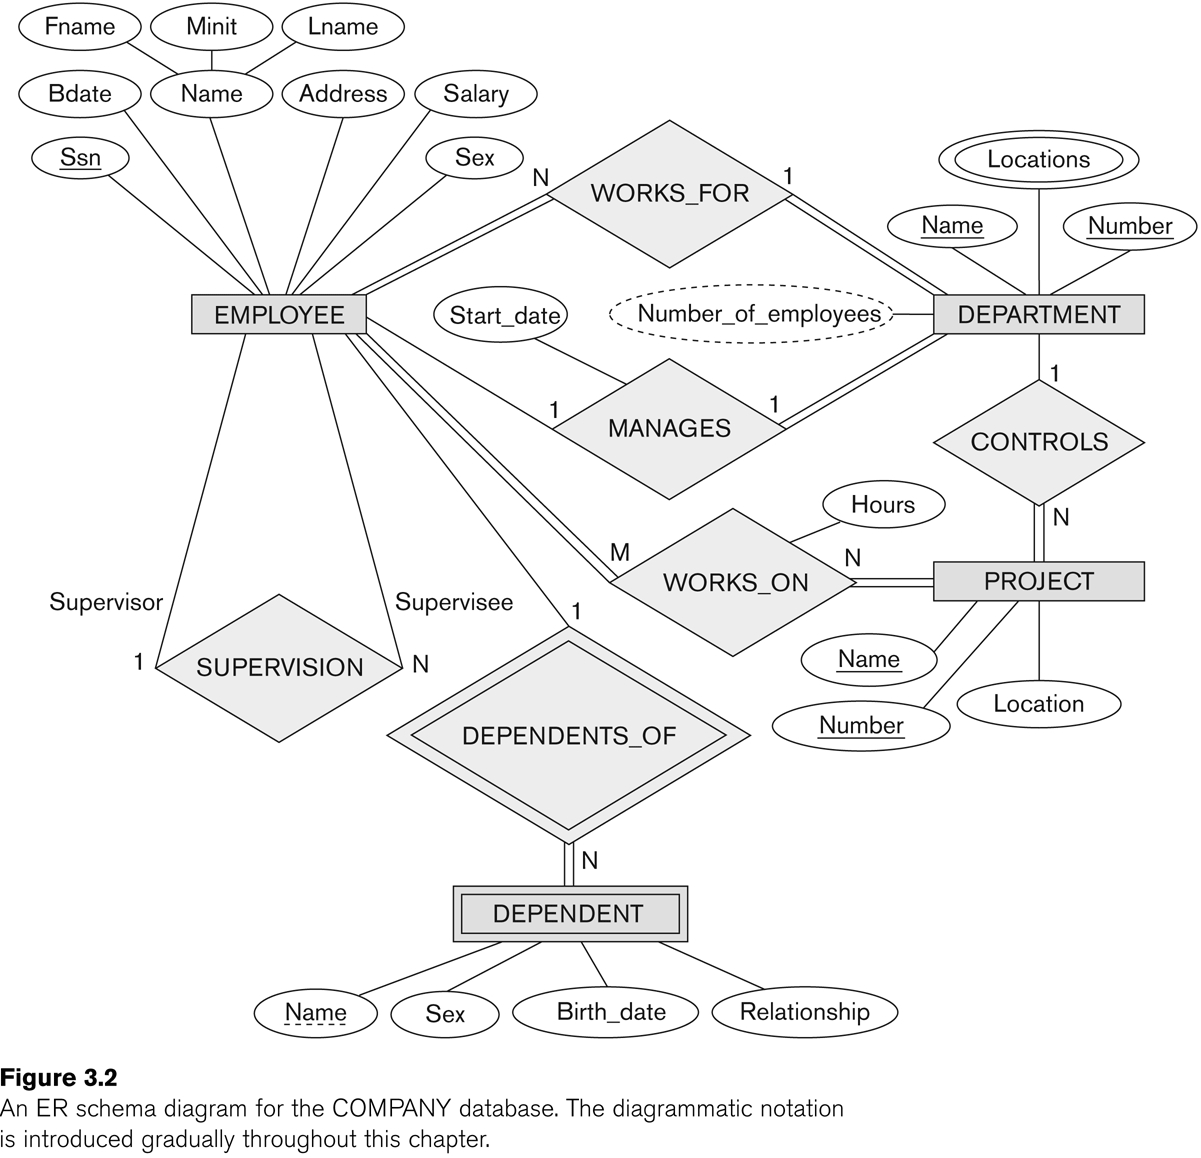 Entity-Relationship Modeling in Er Diagram Composite Entity